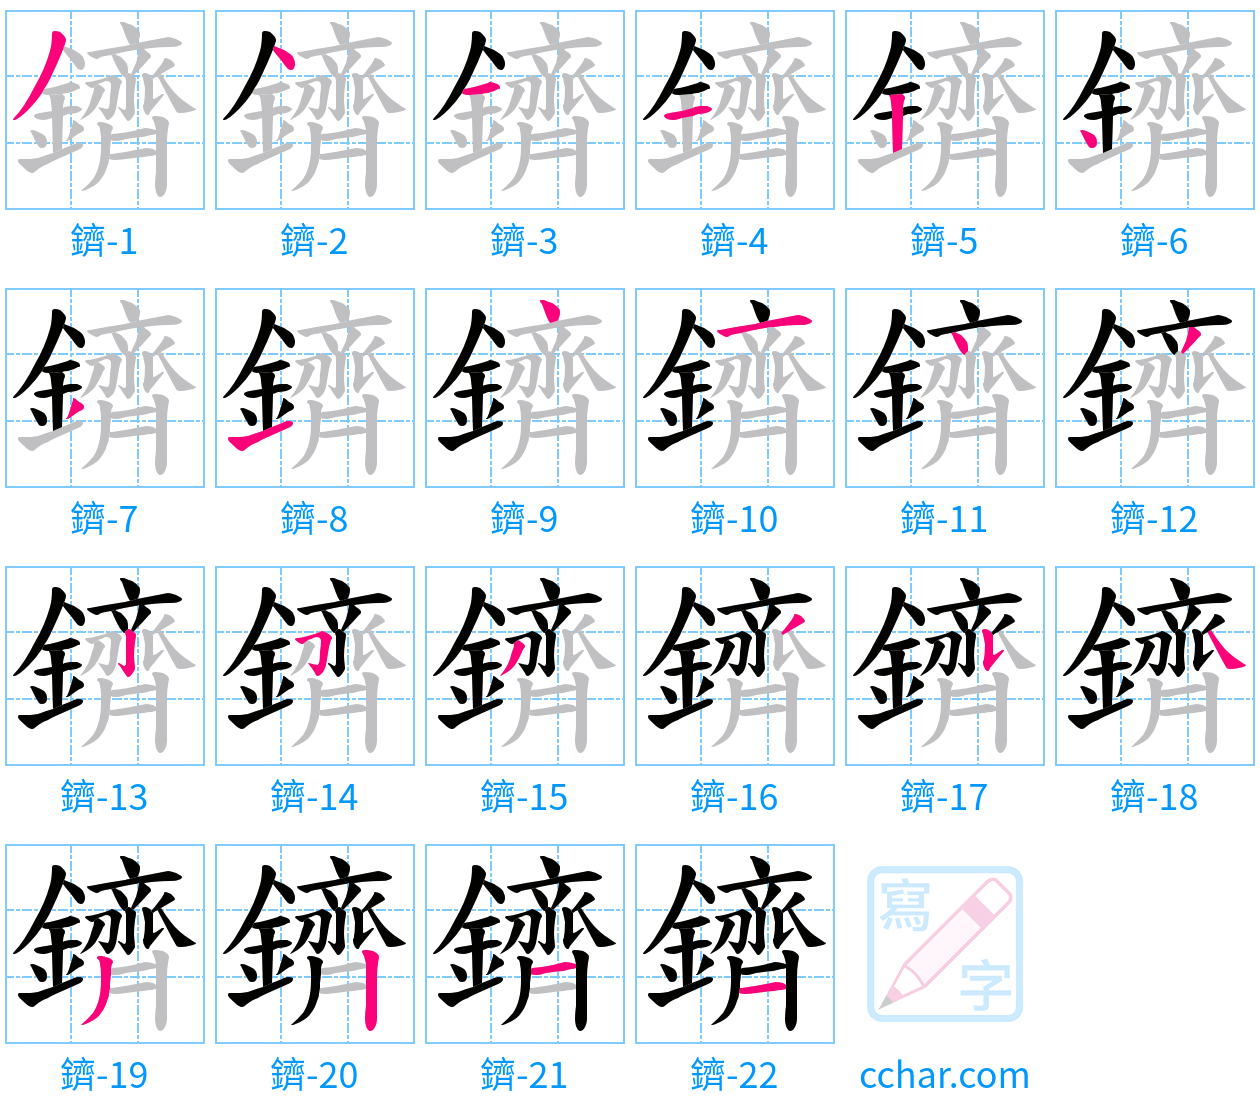 鑇 stroke order step-by-step diagram